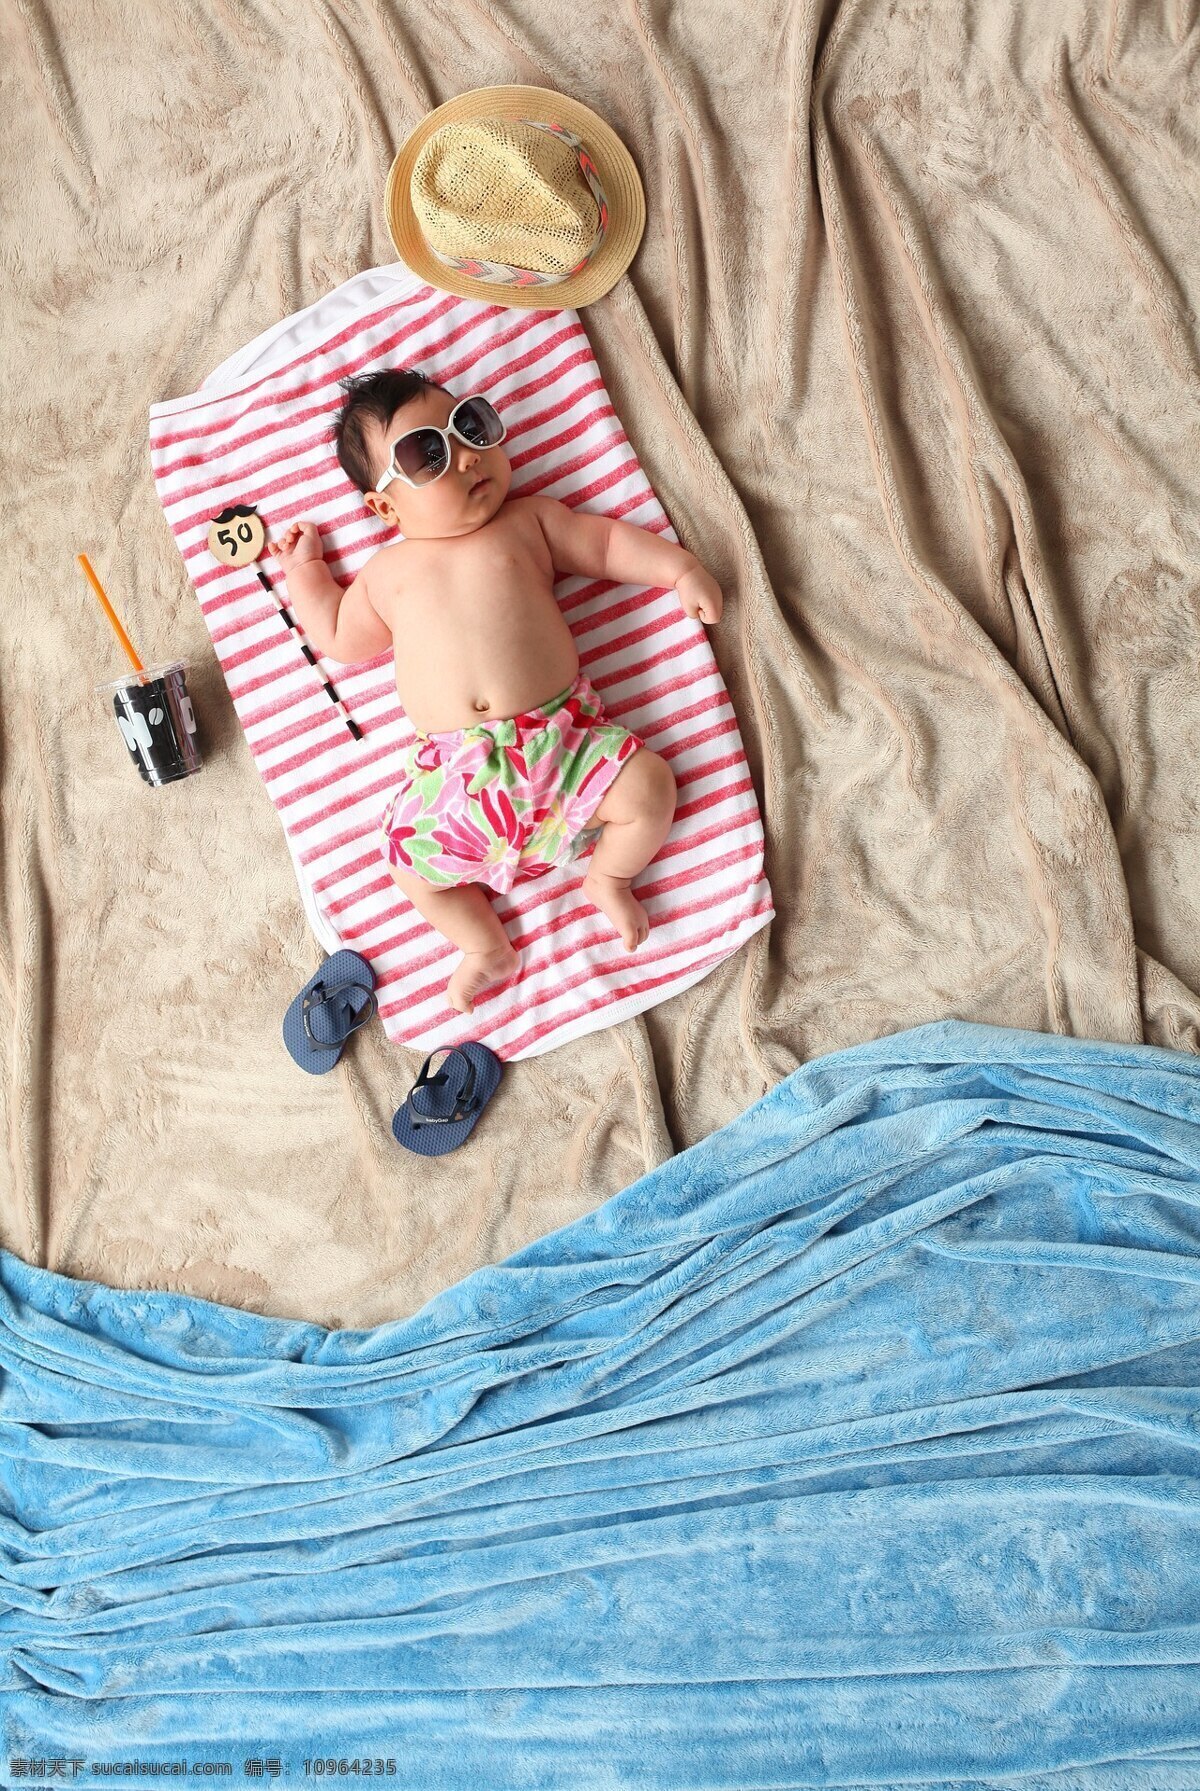 可爱 婴儿 电商 广告宣传 创 意图 儿童节 六一 61 儿童 孩子 广告 配图 创意 沙滩 日光浴 太阳镜 度假 童装 生活百科 生活素材